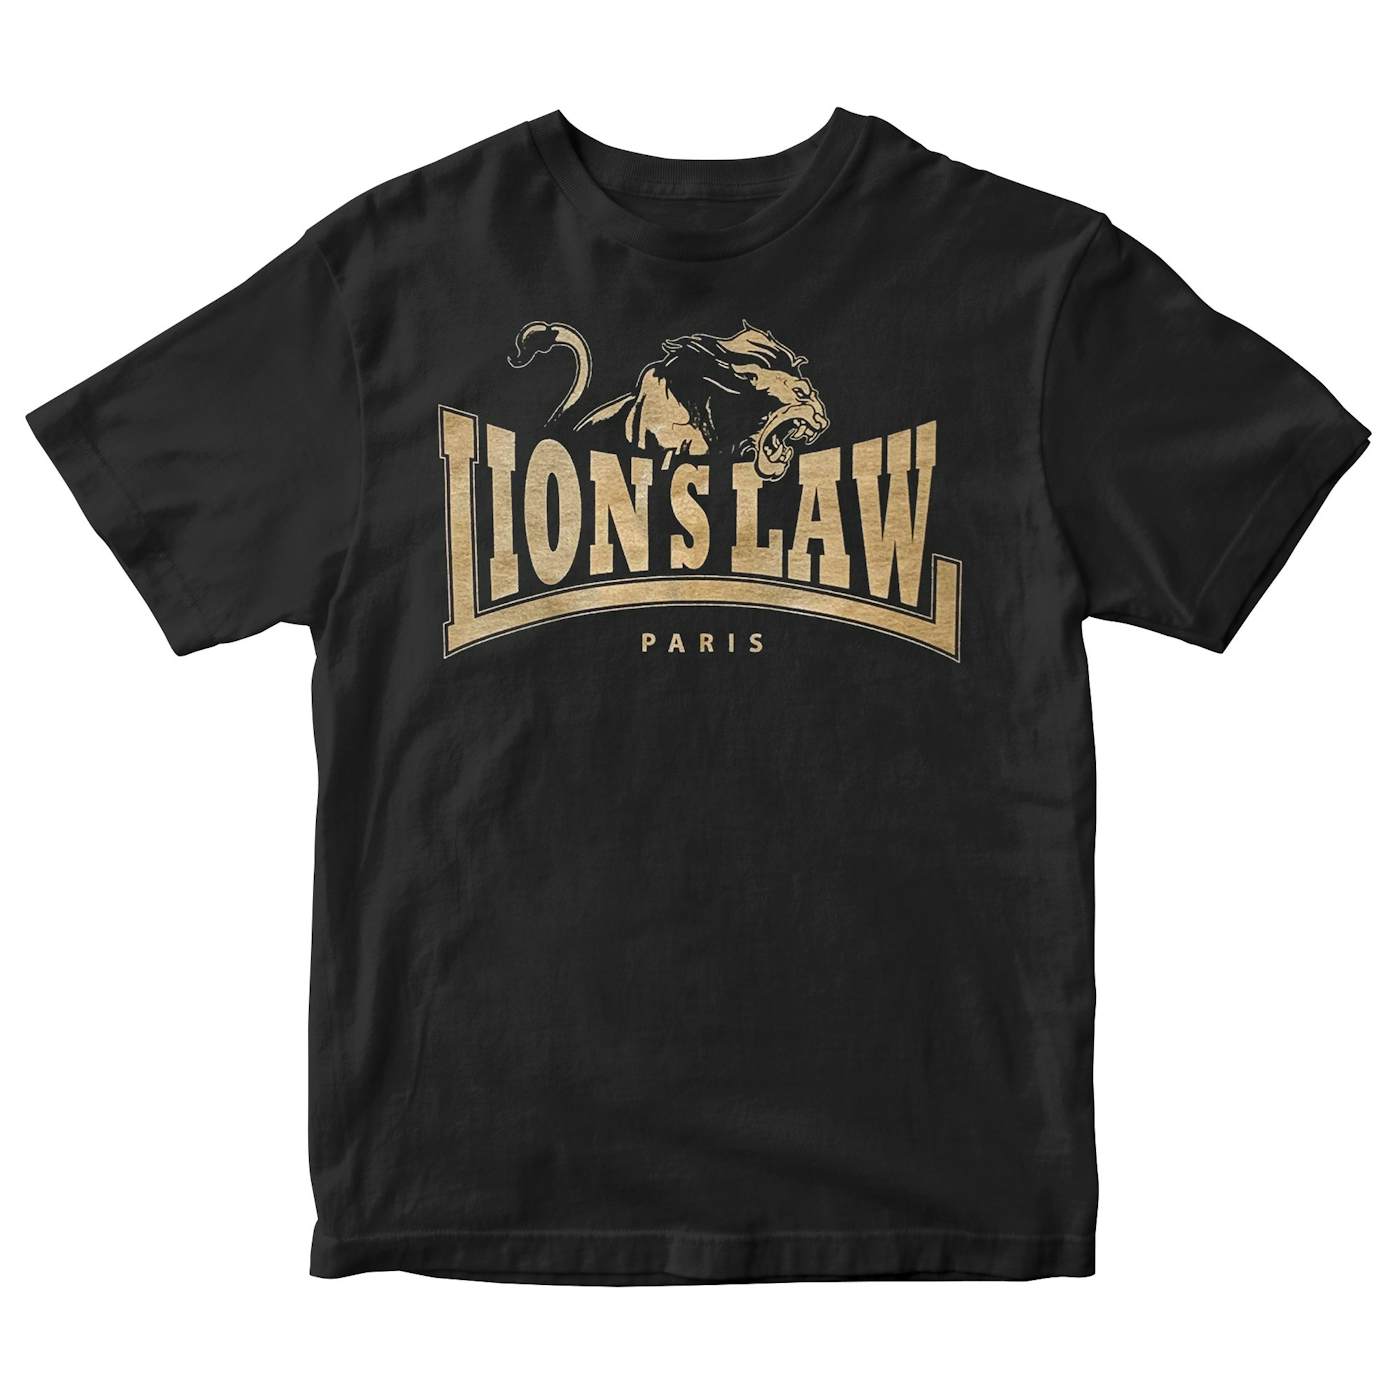 Lion's Law - Paris Logo - Gold on Black - T-Shirt